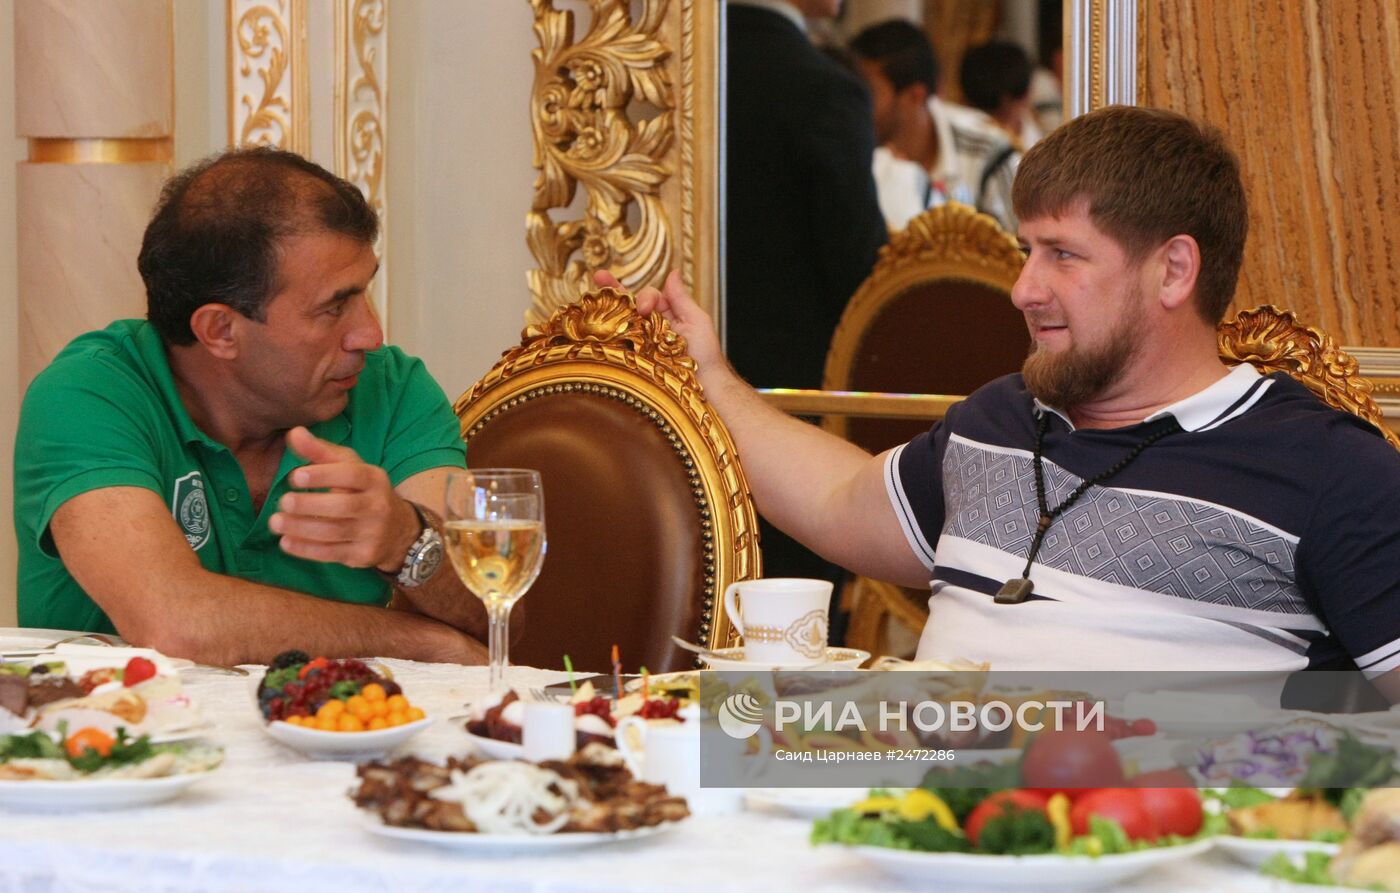 Глава Чечни Р.Кадыров встретился с рководством и игроками РФК "Терек"